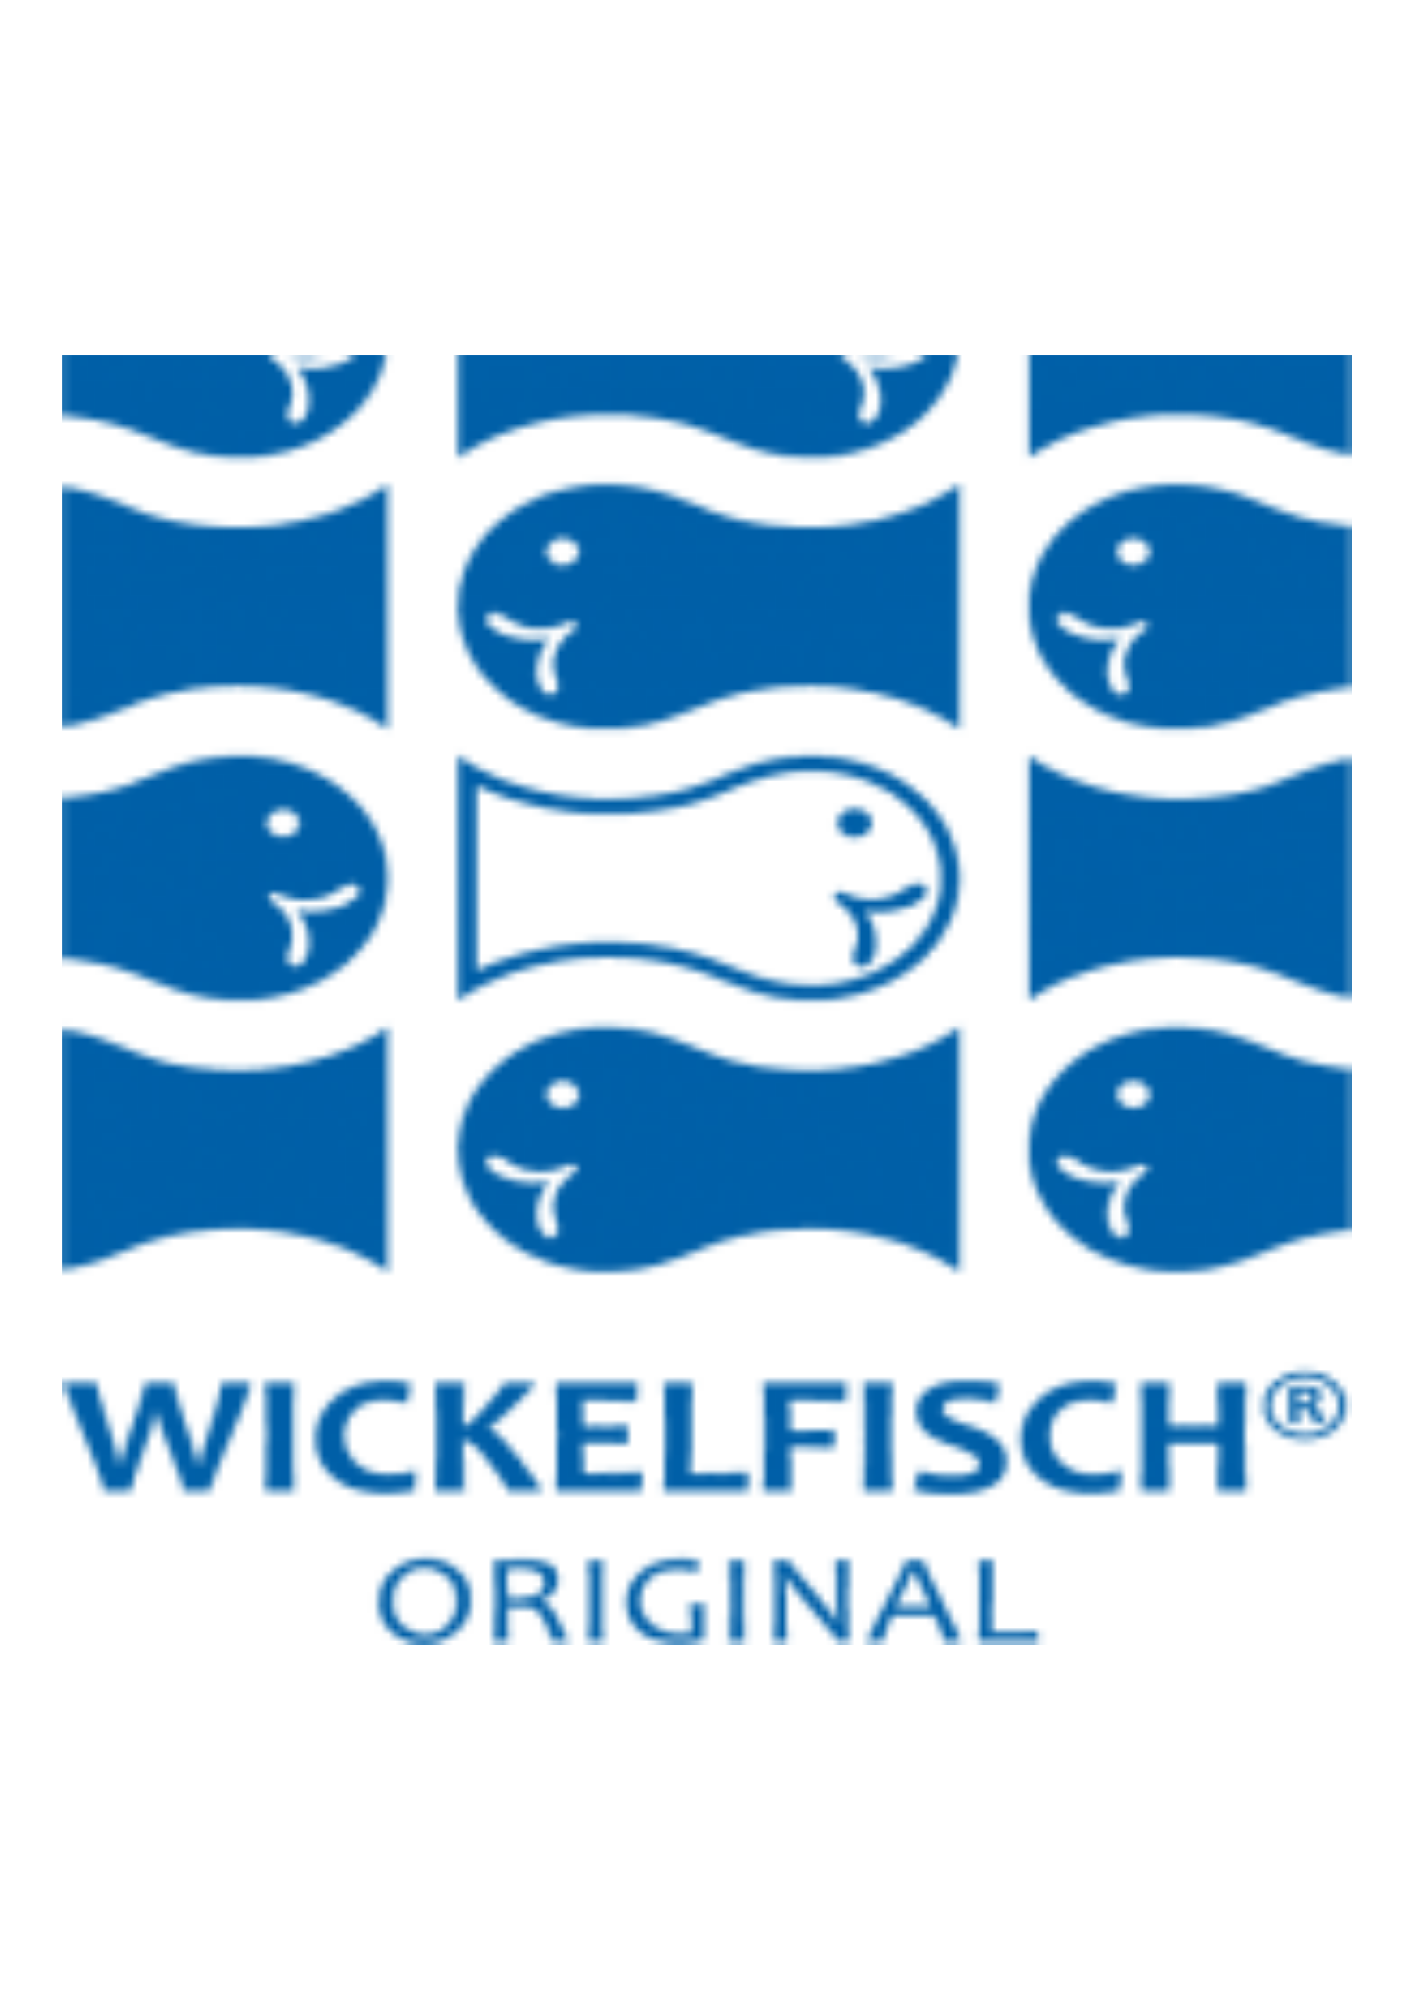 Wickelfisch, partenaire de Captain Skipper